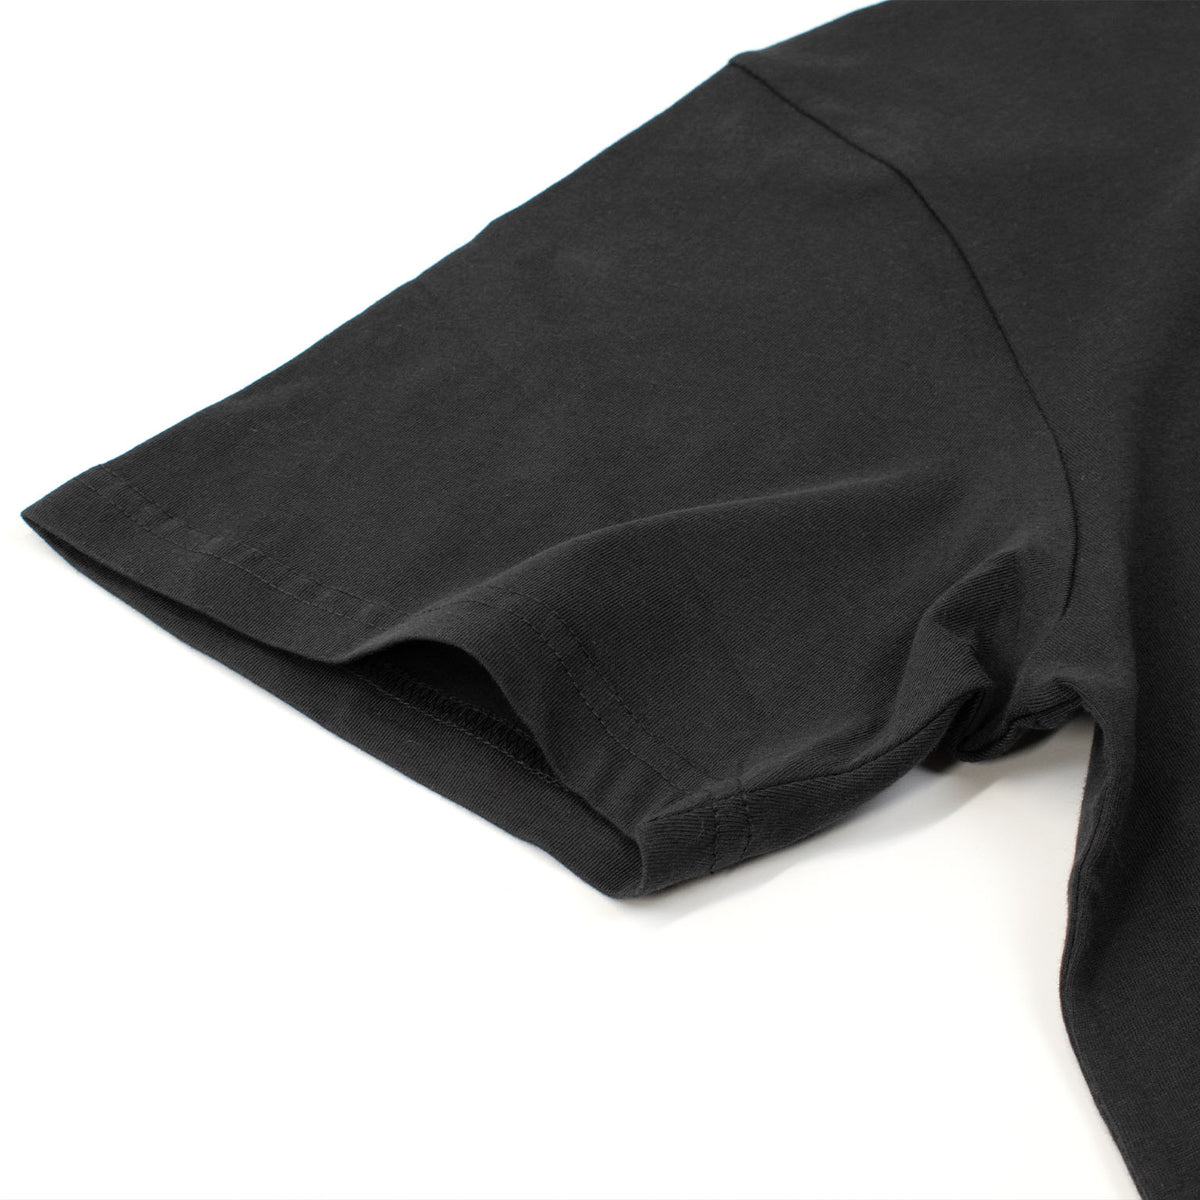 リップカール Tシャツ 半袖 オーガニックコットン サーフロゴ Rip Curl FADE OUT ICON TEE 4色展開 (CTESS9)